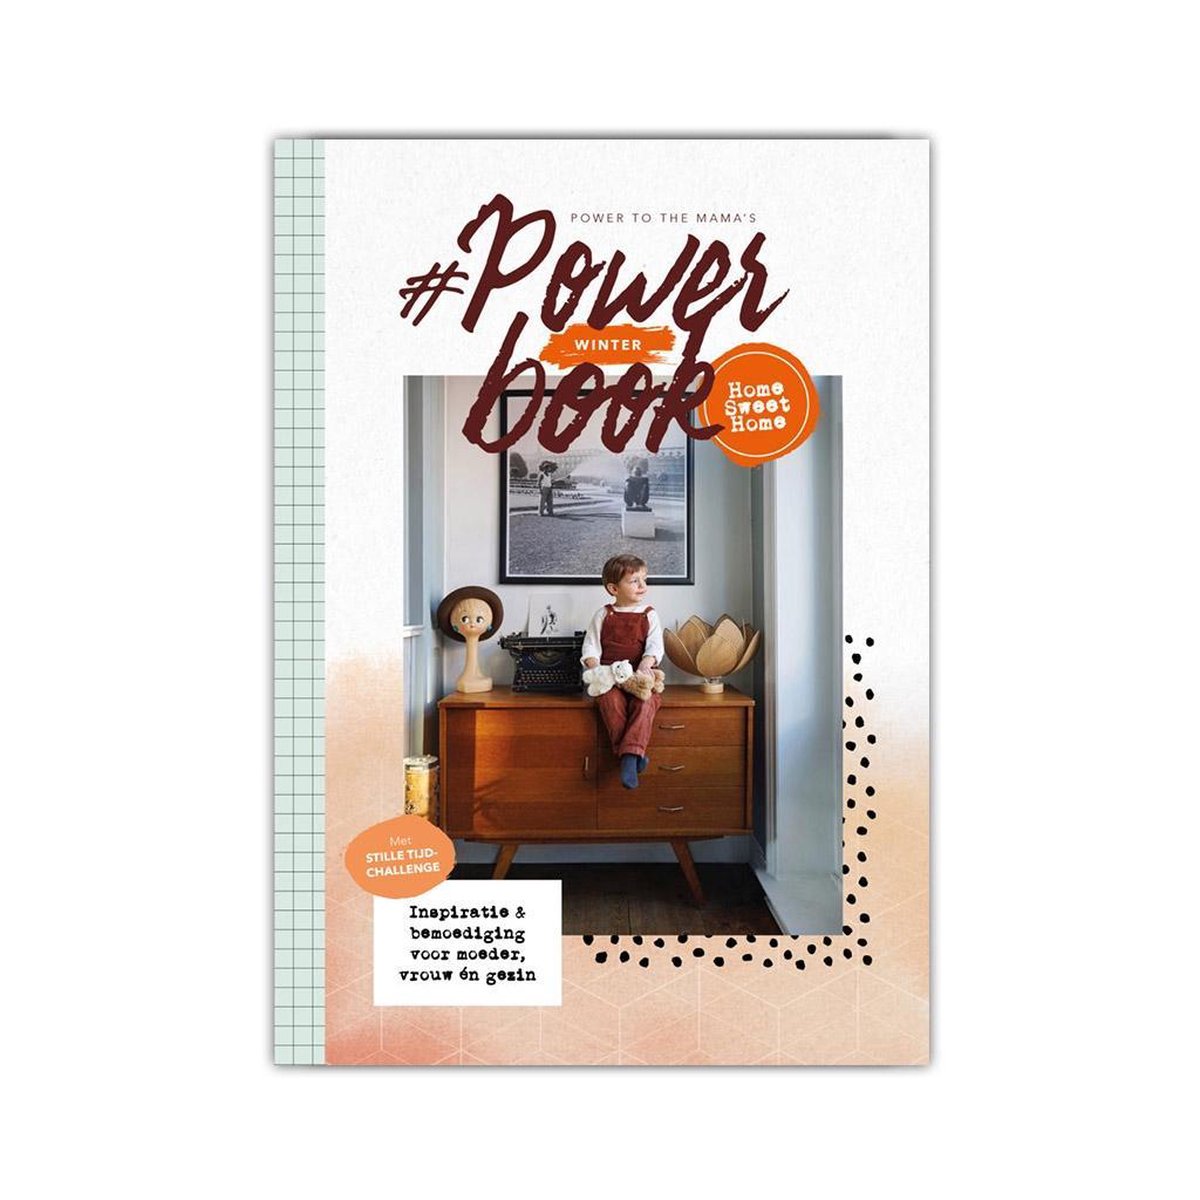 #Powerbook: Home Sweet Home (winter) / #Powerbook / 1